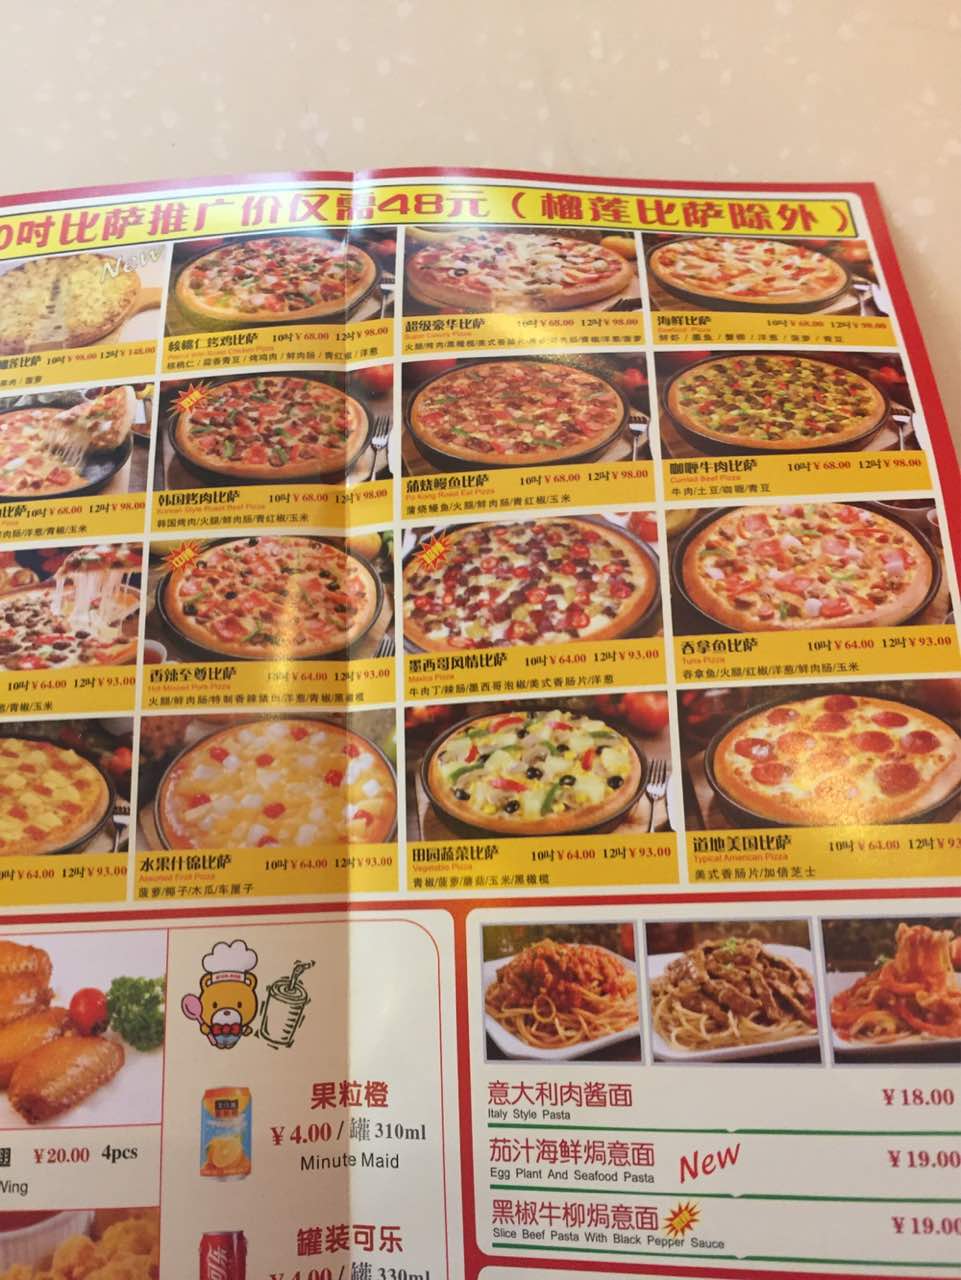 看到有人在中国寻找达美乐披萨。1960 年之前可能知道多米诺